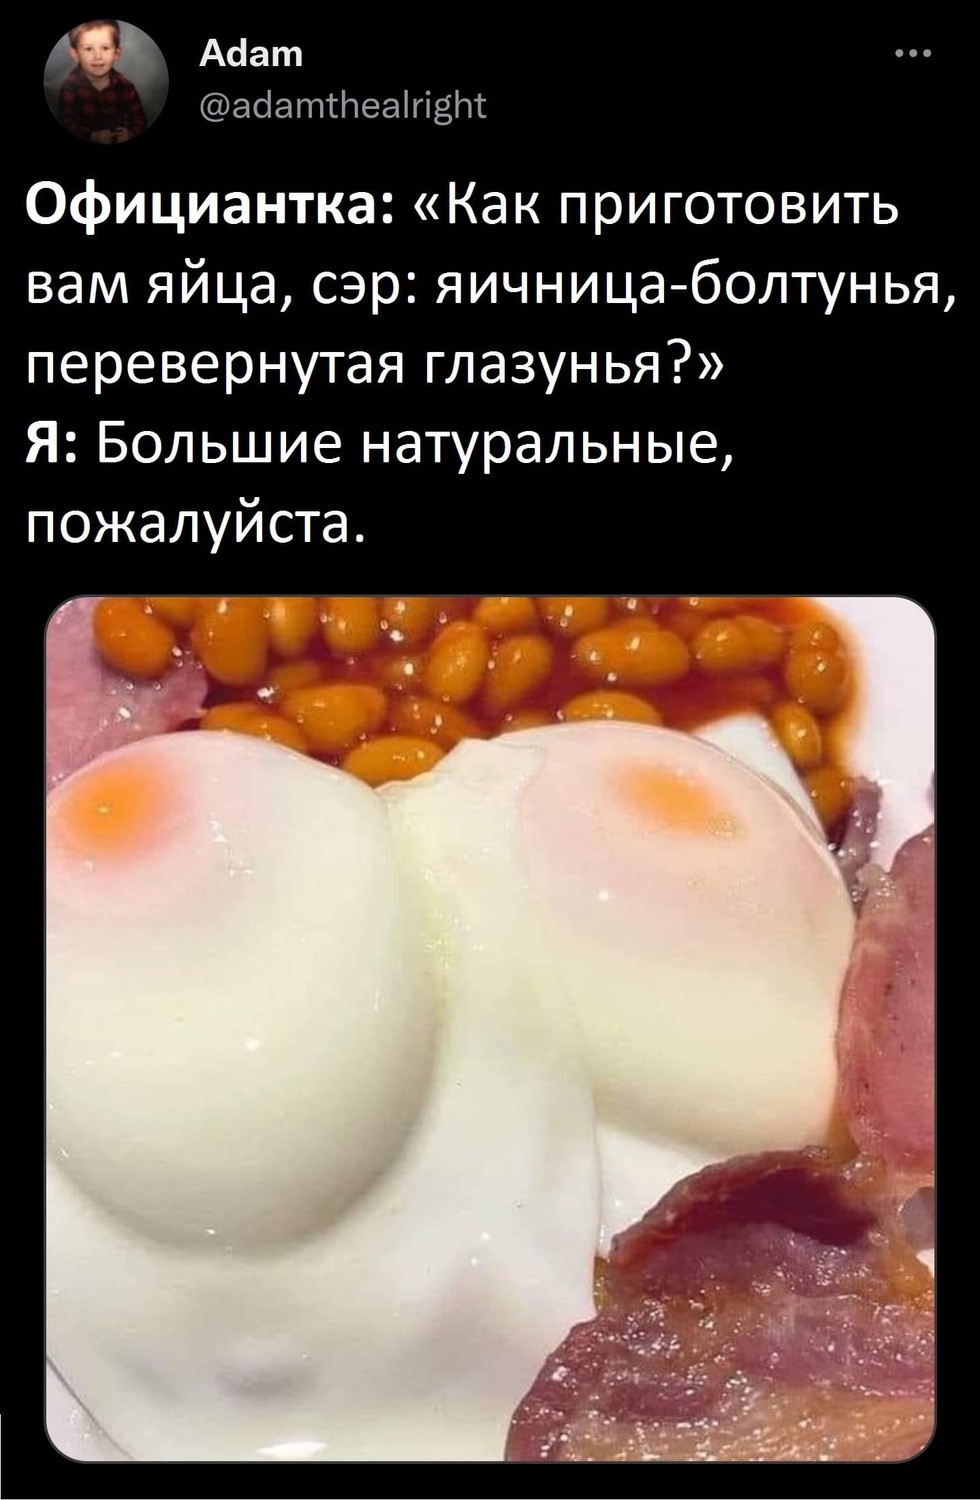 Официантка: «Как приготовить вам яйца, сэр: яичница-болтунья, перевернутая глазунья?»
Я: Большие натуральные, пожалуйста.